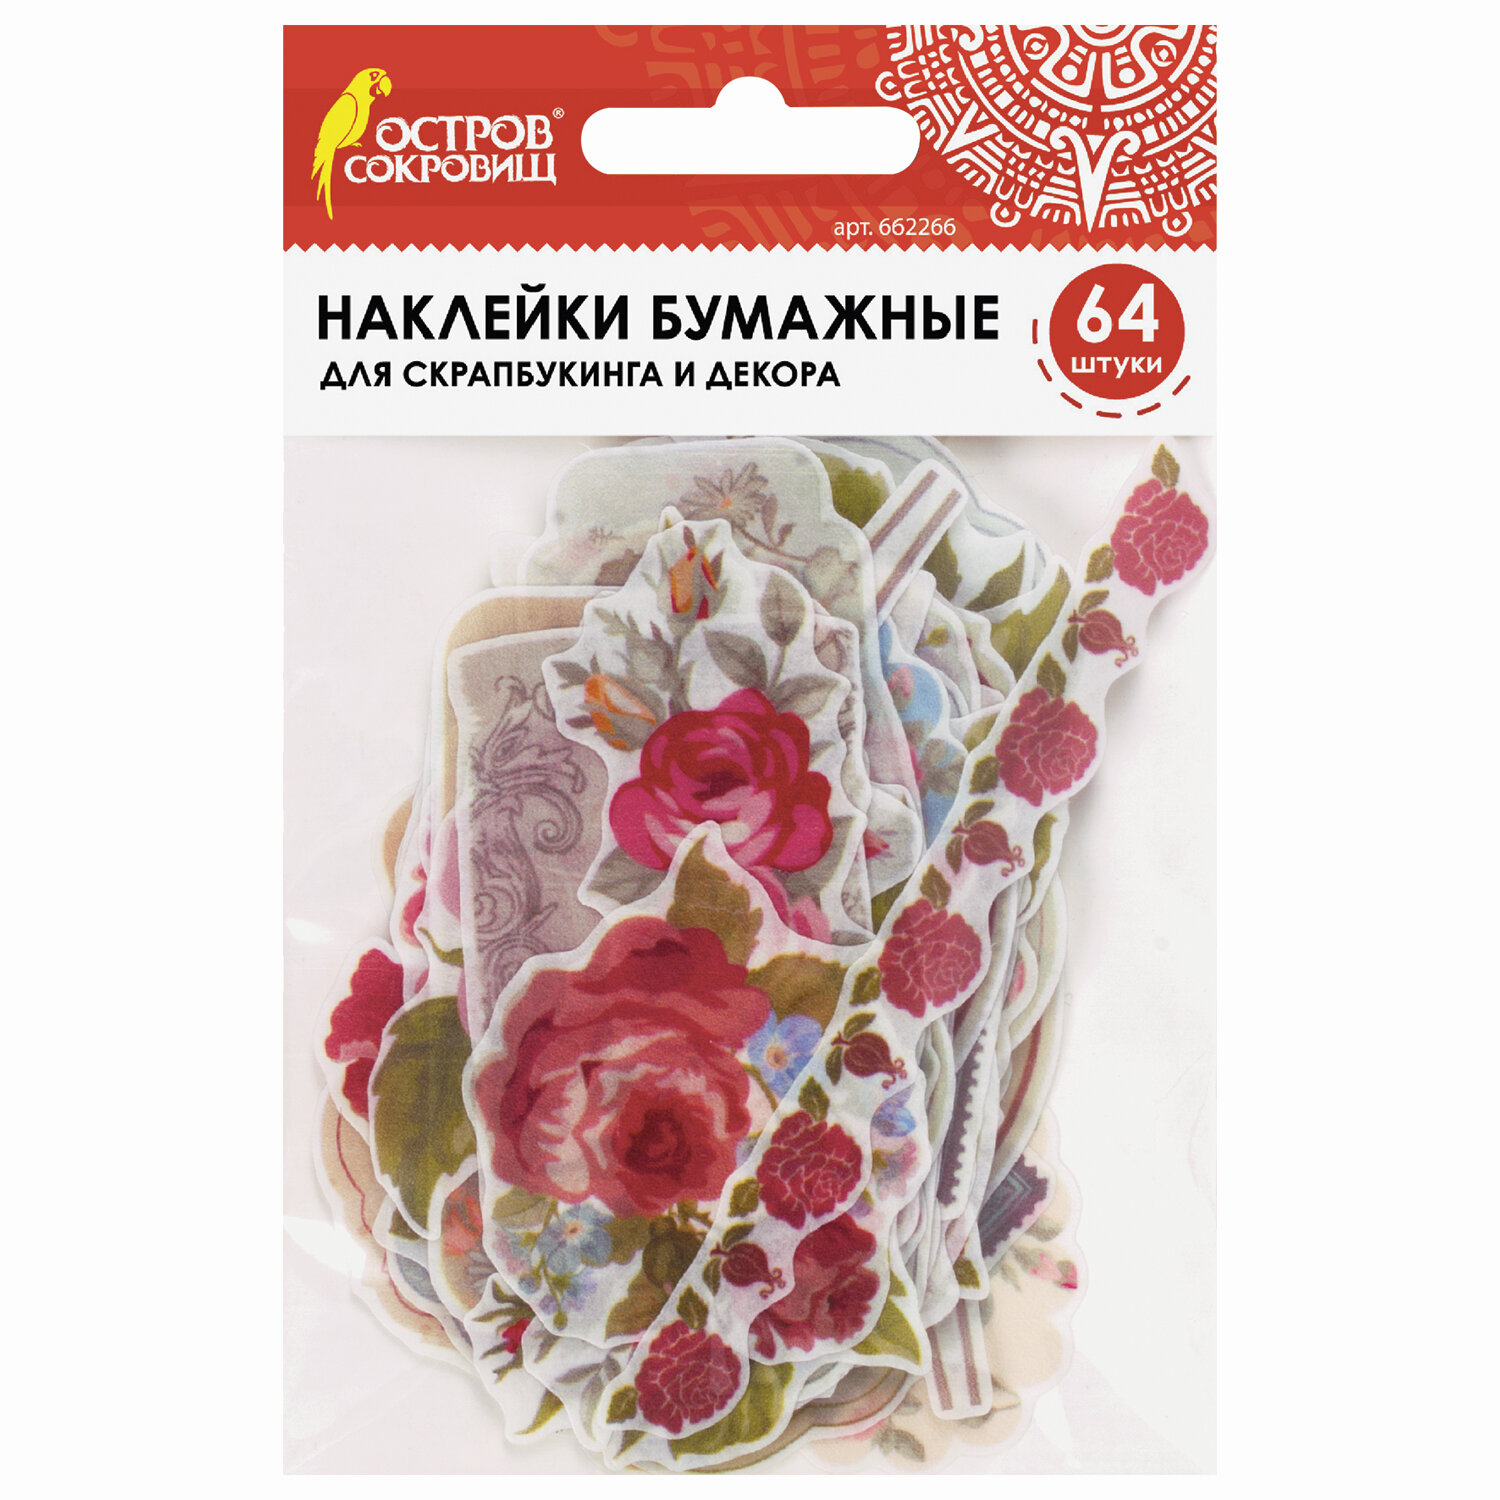 фото Наклейки для скрапбукинга розы из washi-бумаги, 64 шт, 32 дизайна, остров сокровищ, 662266